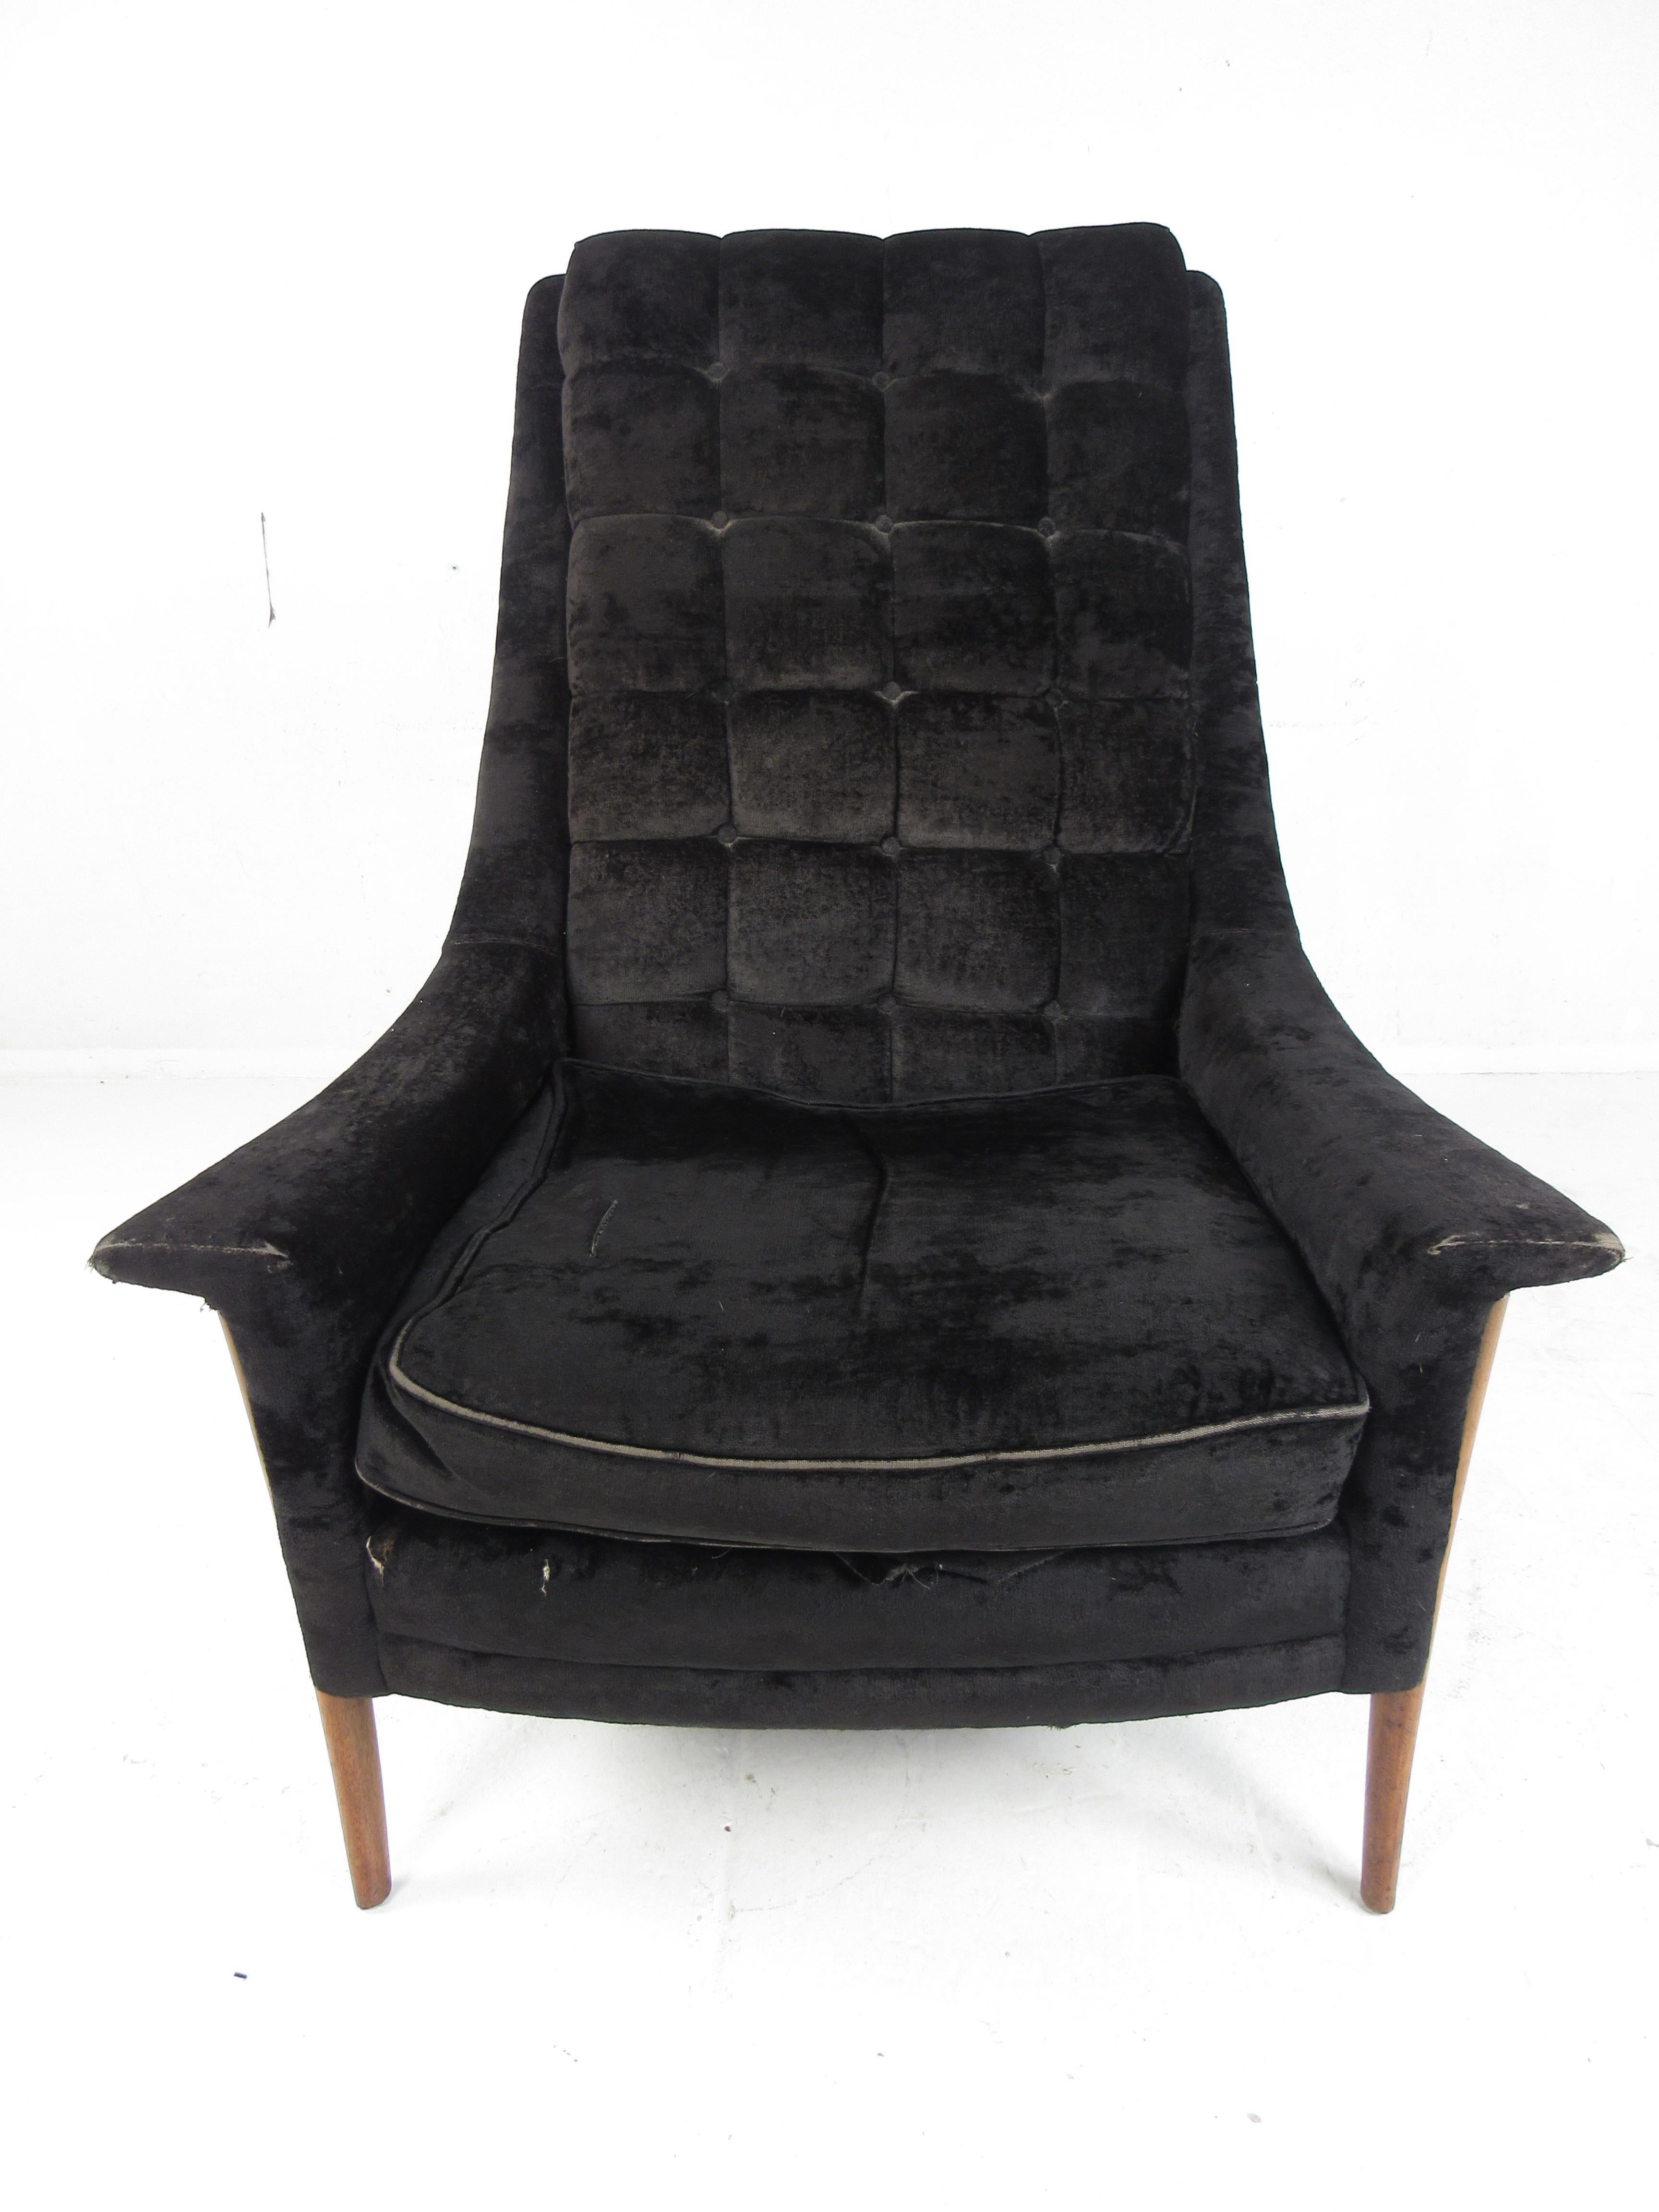 Dieser atemberaubende moderne Sessel im Vintage-Stil besticht durch seine geschwungenen Beine und die geflügelten Armlehnen. Ein schlankes und komfortables Design, das in jeder Sitzgruppe gut aussieht. Bitte bestätigen Sie den Standort des Artikels